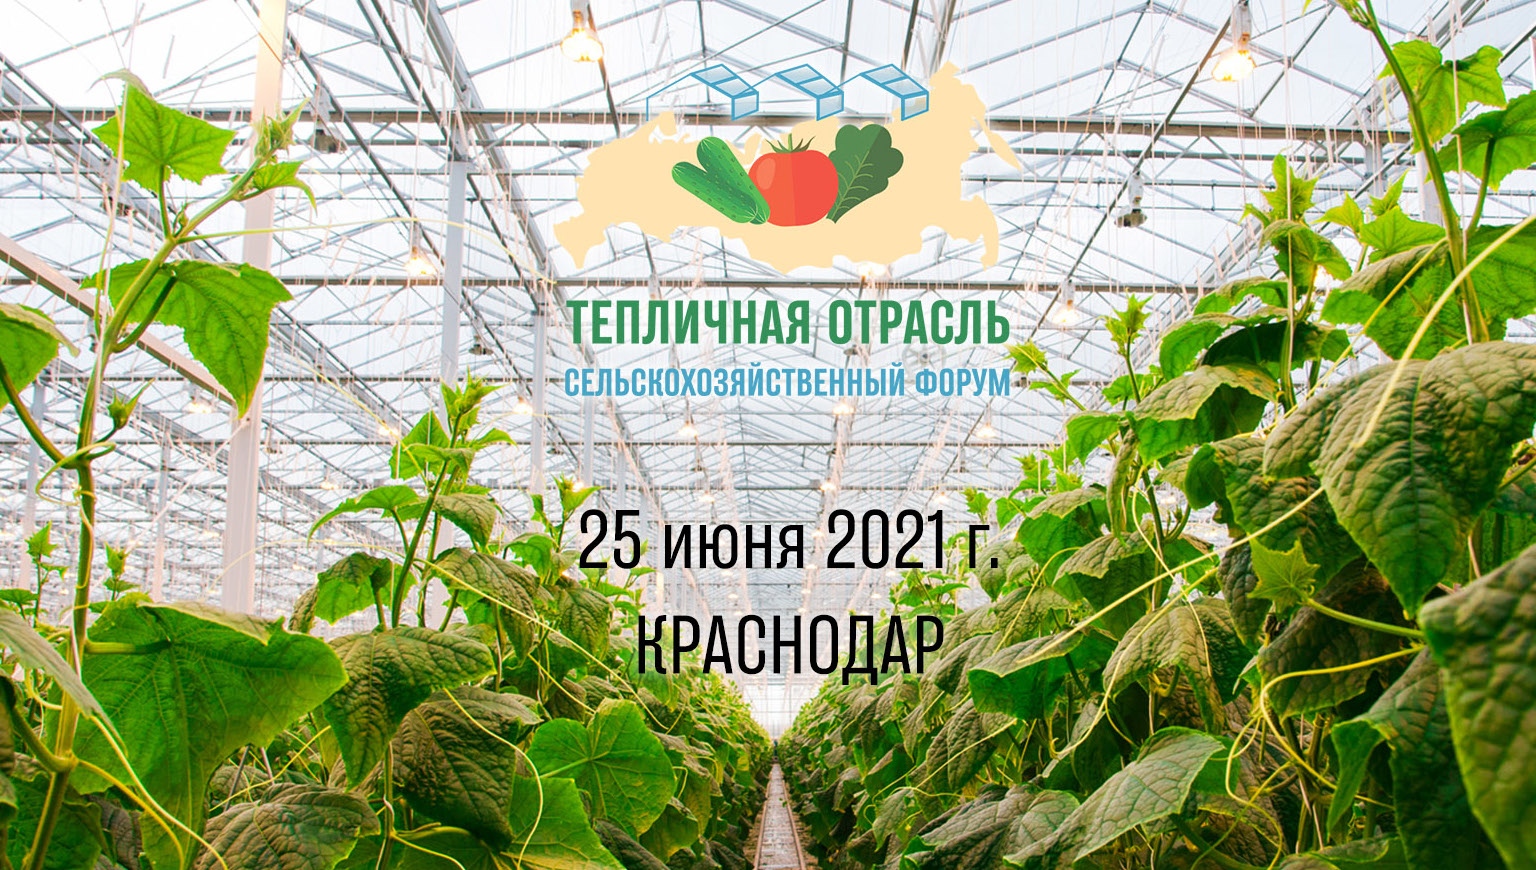 Меньше месяца осталось до II сельскохозяйственного форума «Тепличная отрасль 2021»!